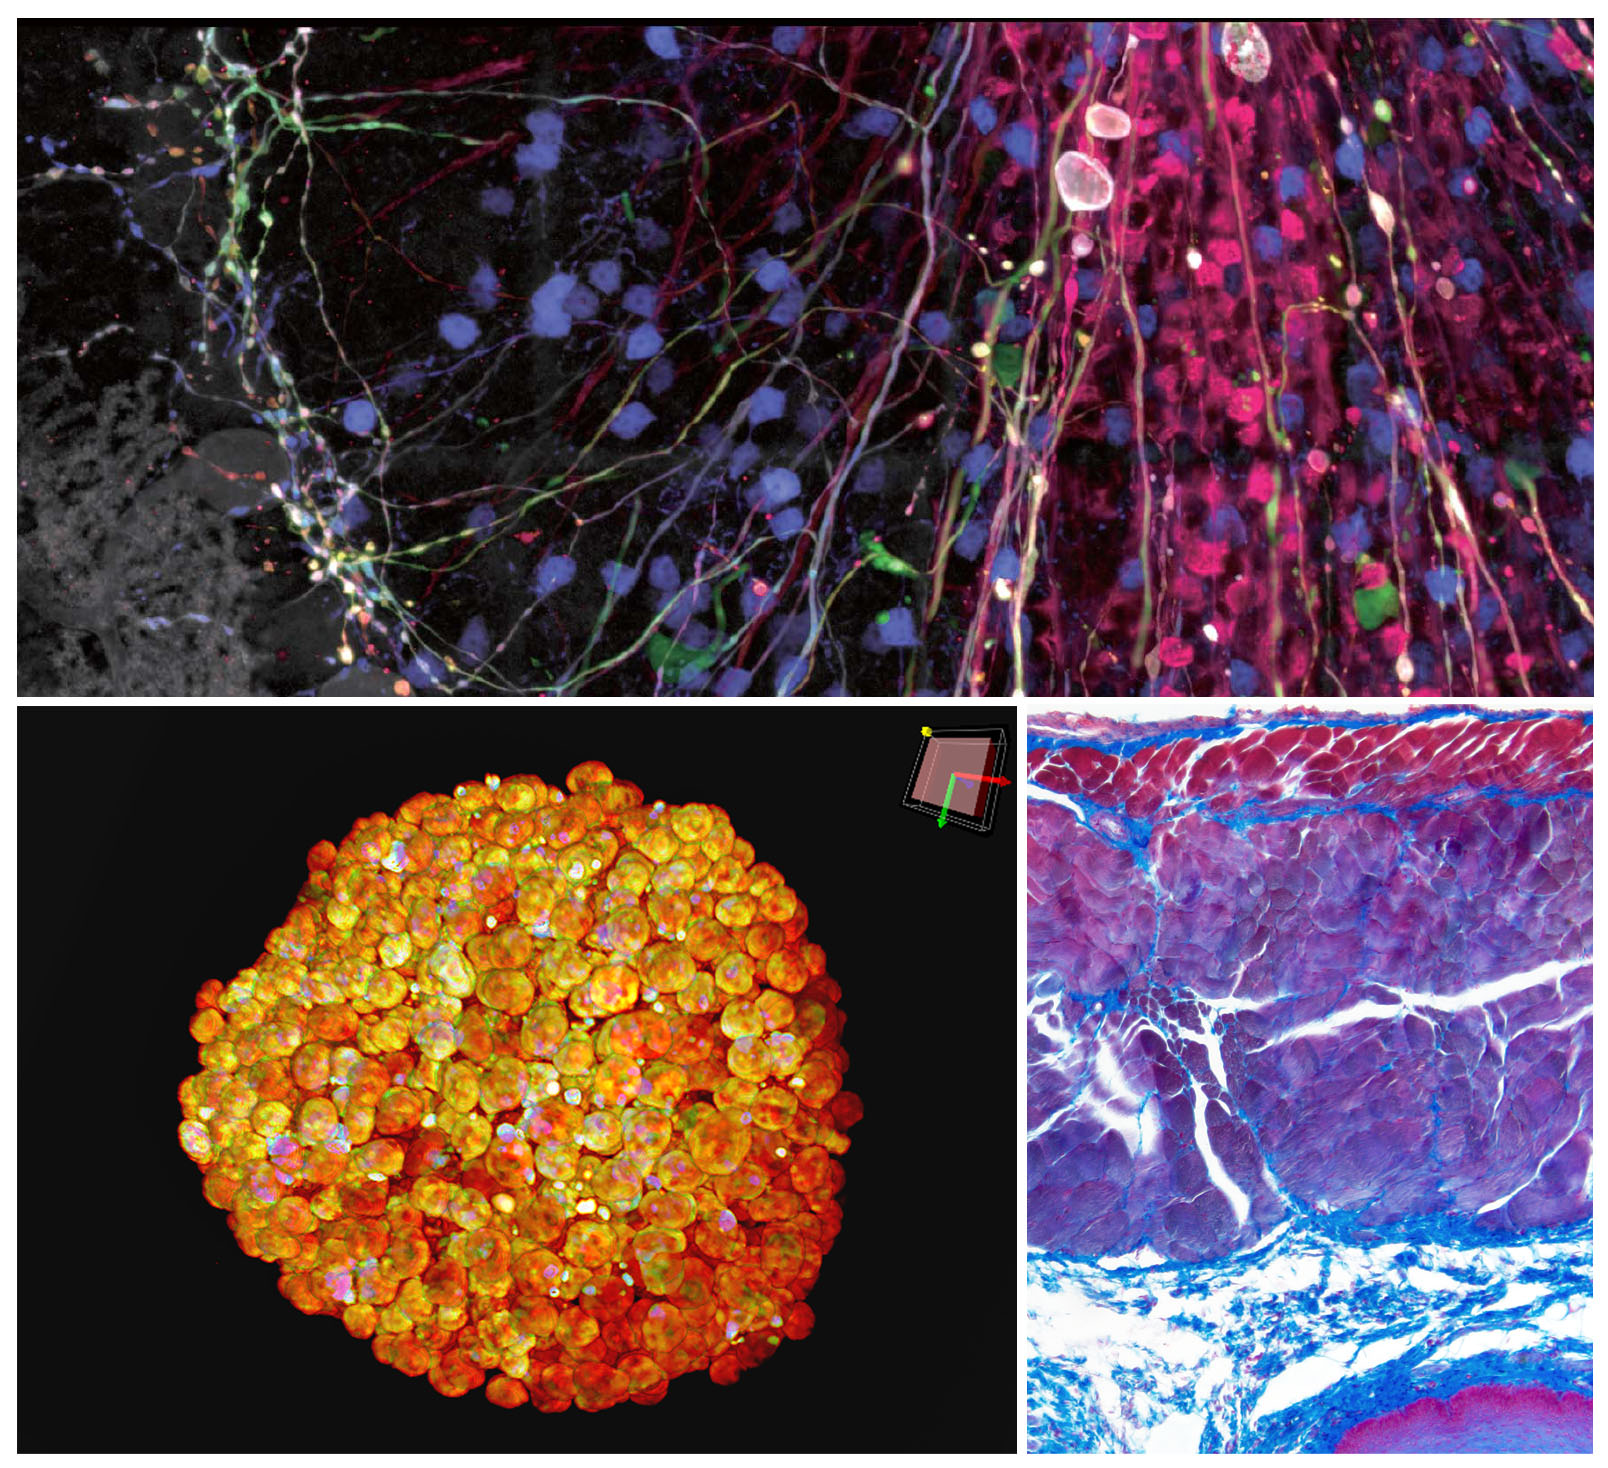 上图：浦肯野细胞的脑彩虹转染图像，使用抗体放大信号。浦肯野细胞胞体、树突和轴突以及颗粒细胞的某些非特异性染色均可辨识，由FV3000显微镜采集。底部左图：HT-29细胞变得清晰的细胞球，使用DAPI（细胞核）染色，由奥林巴斯IXplore Spin系统采集。底部右图：由DP74数码显微镜摄像头采集的偶氮卡红染色图像。